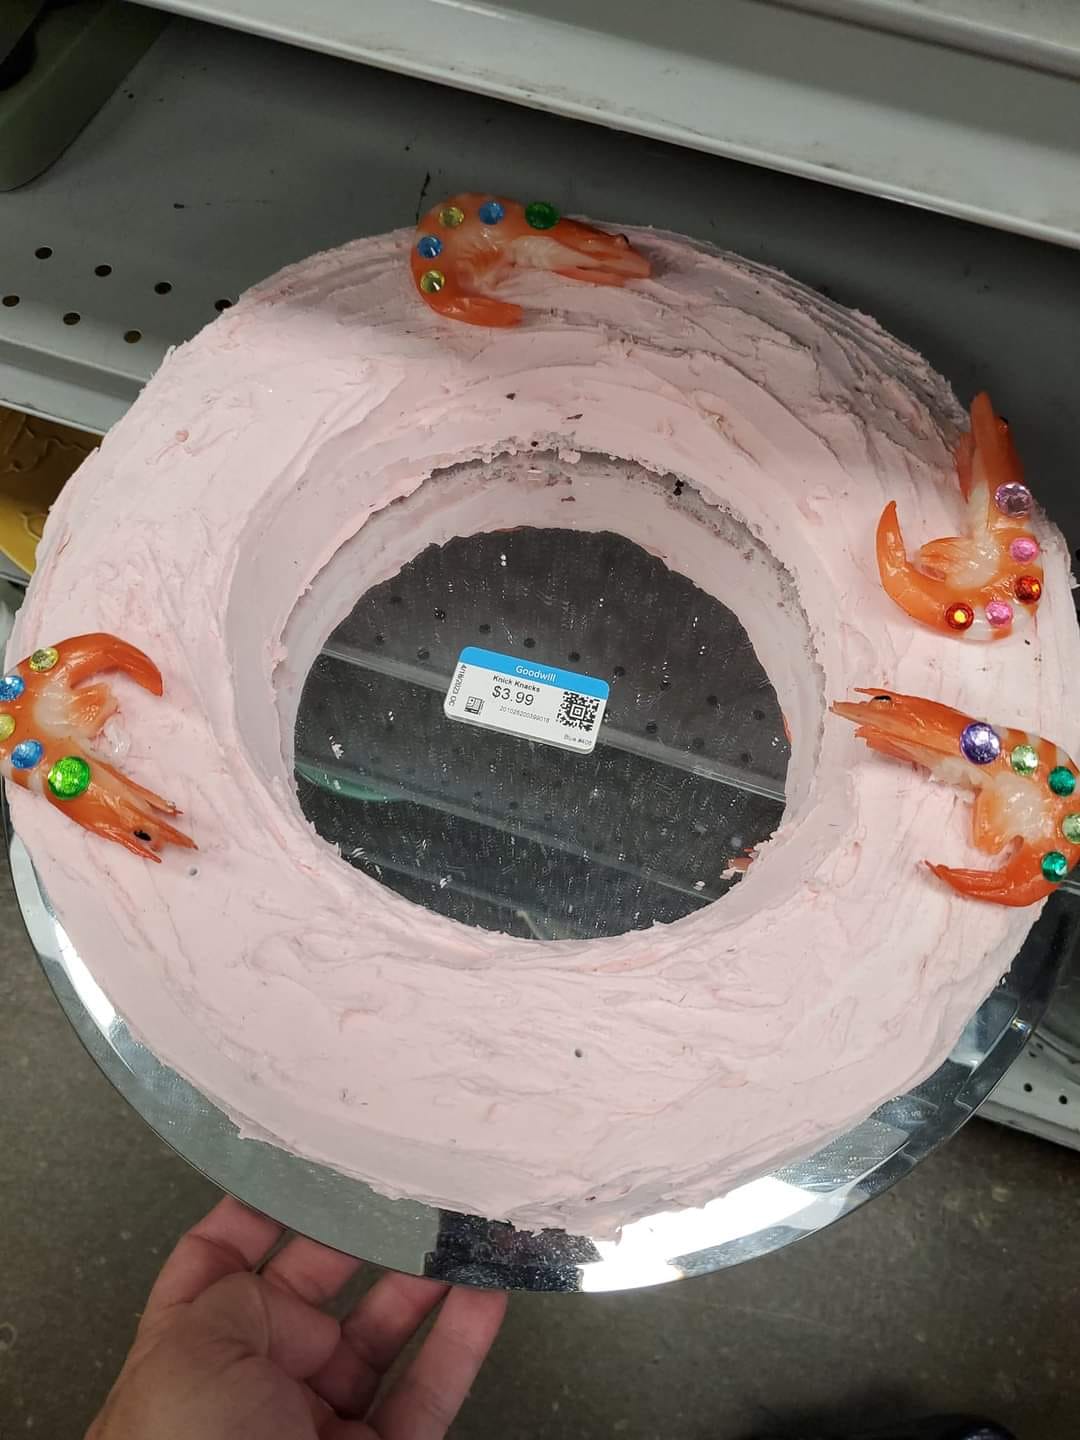 trouvé dans un magasin d’occasion. Je pensais que c’était un gâteau.